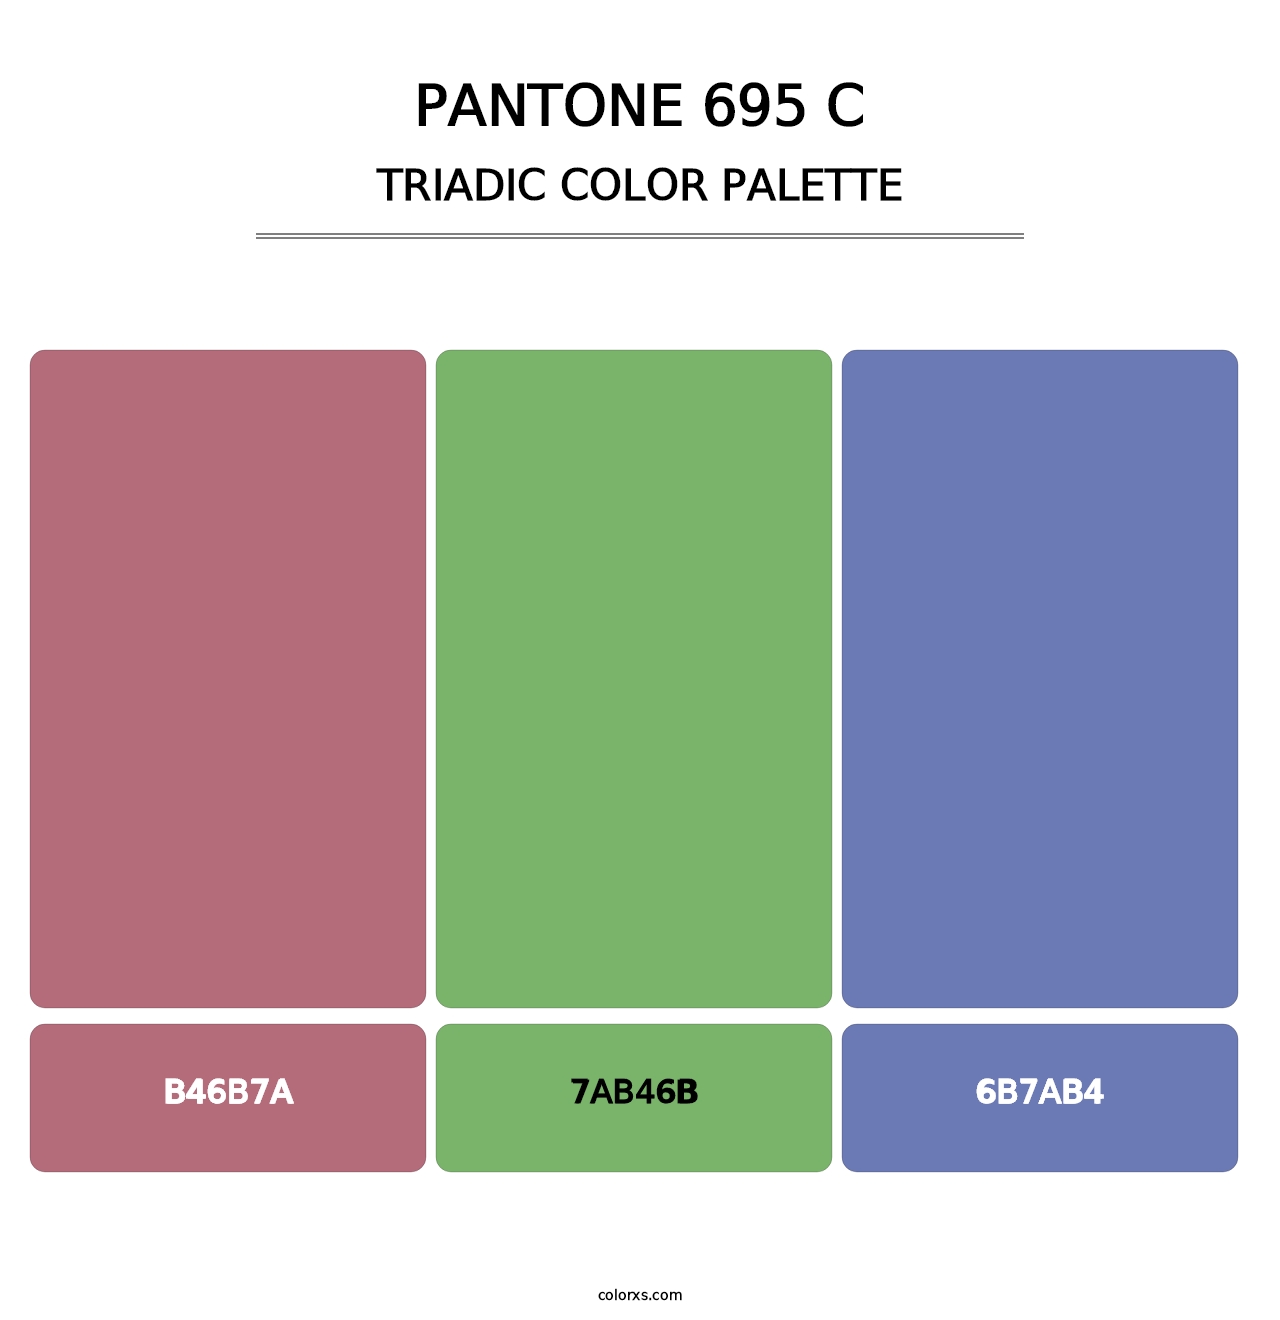 PANTONE 695 C - Triadic Color Palette